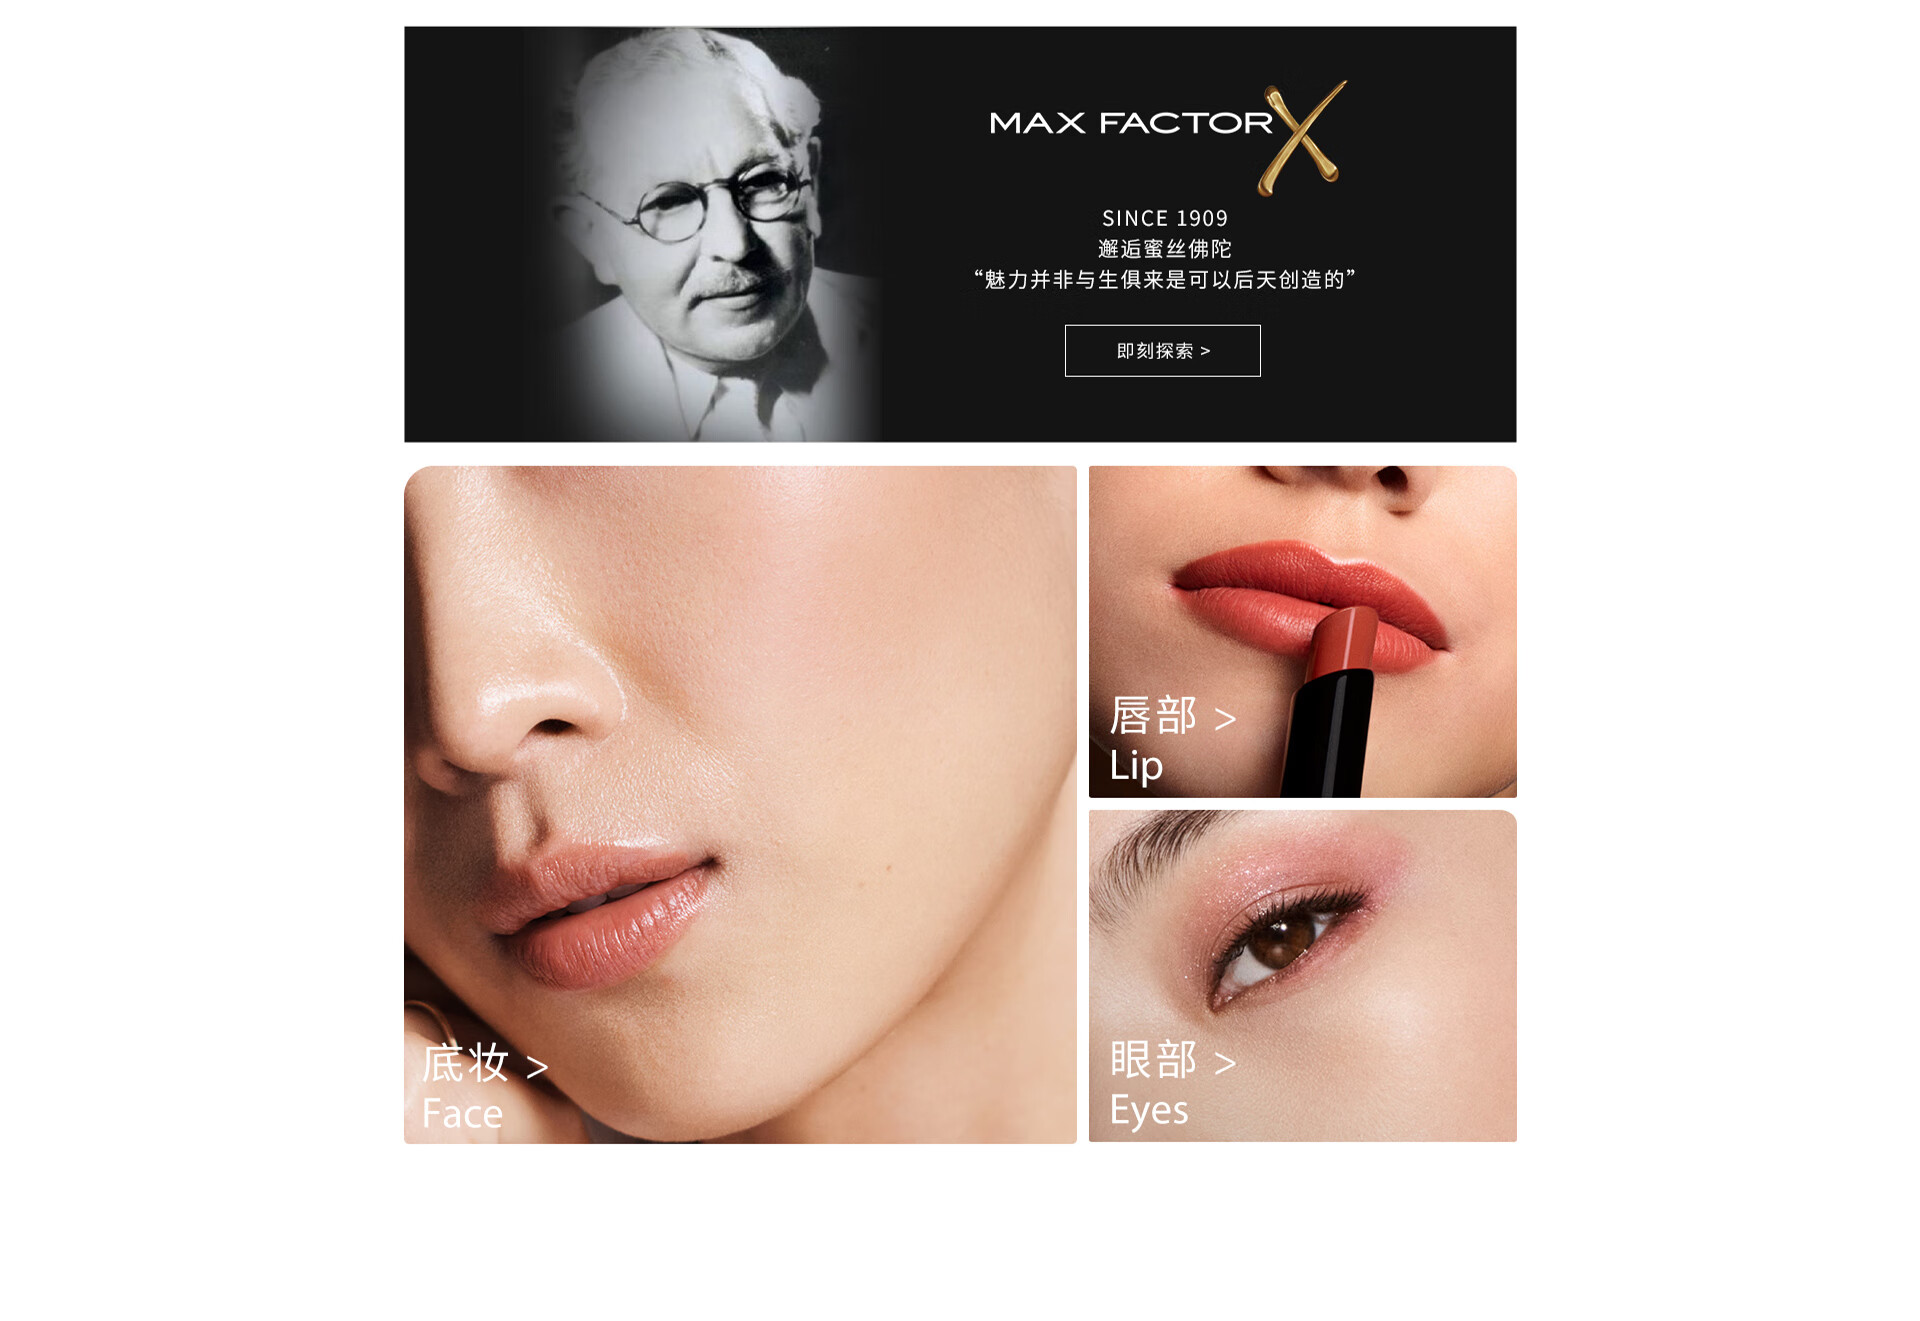 彩妆品牌Max Factor蜜丝佛陀推出全新升级版冰淇淋粉霜。 - 华丽通